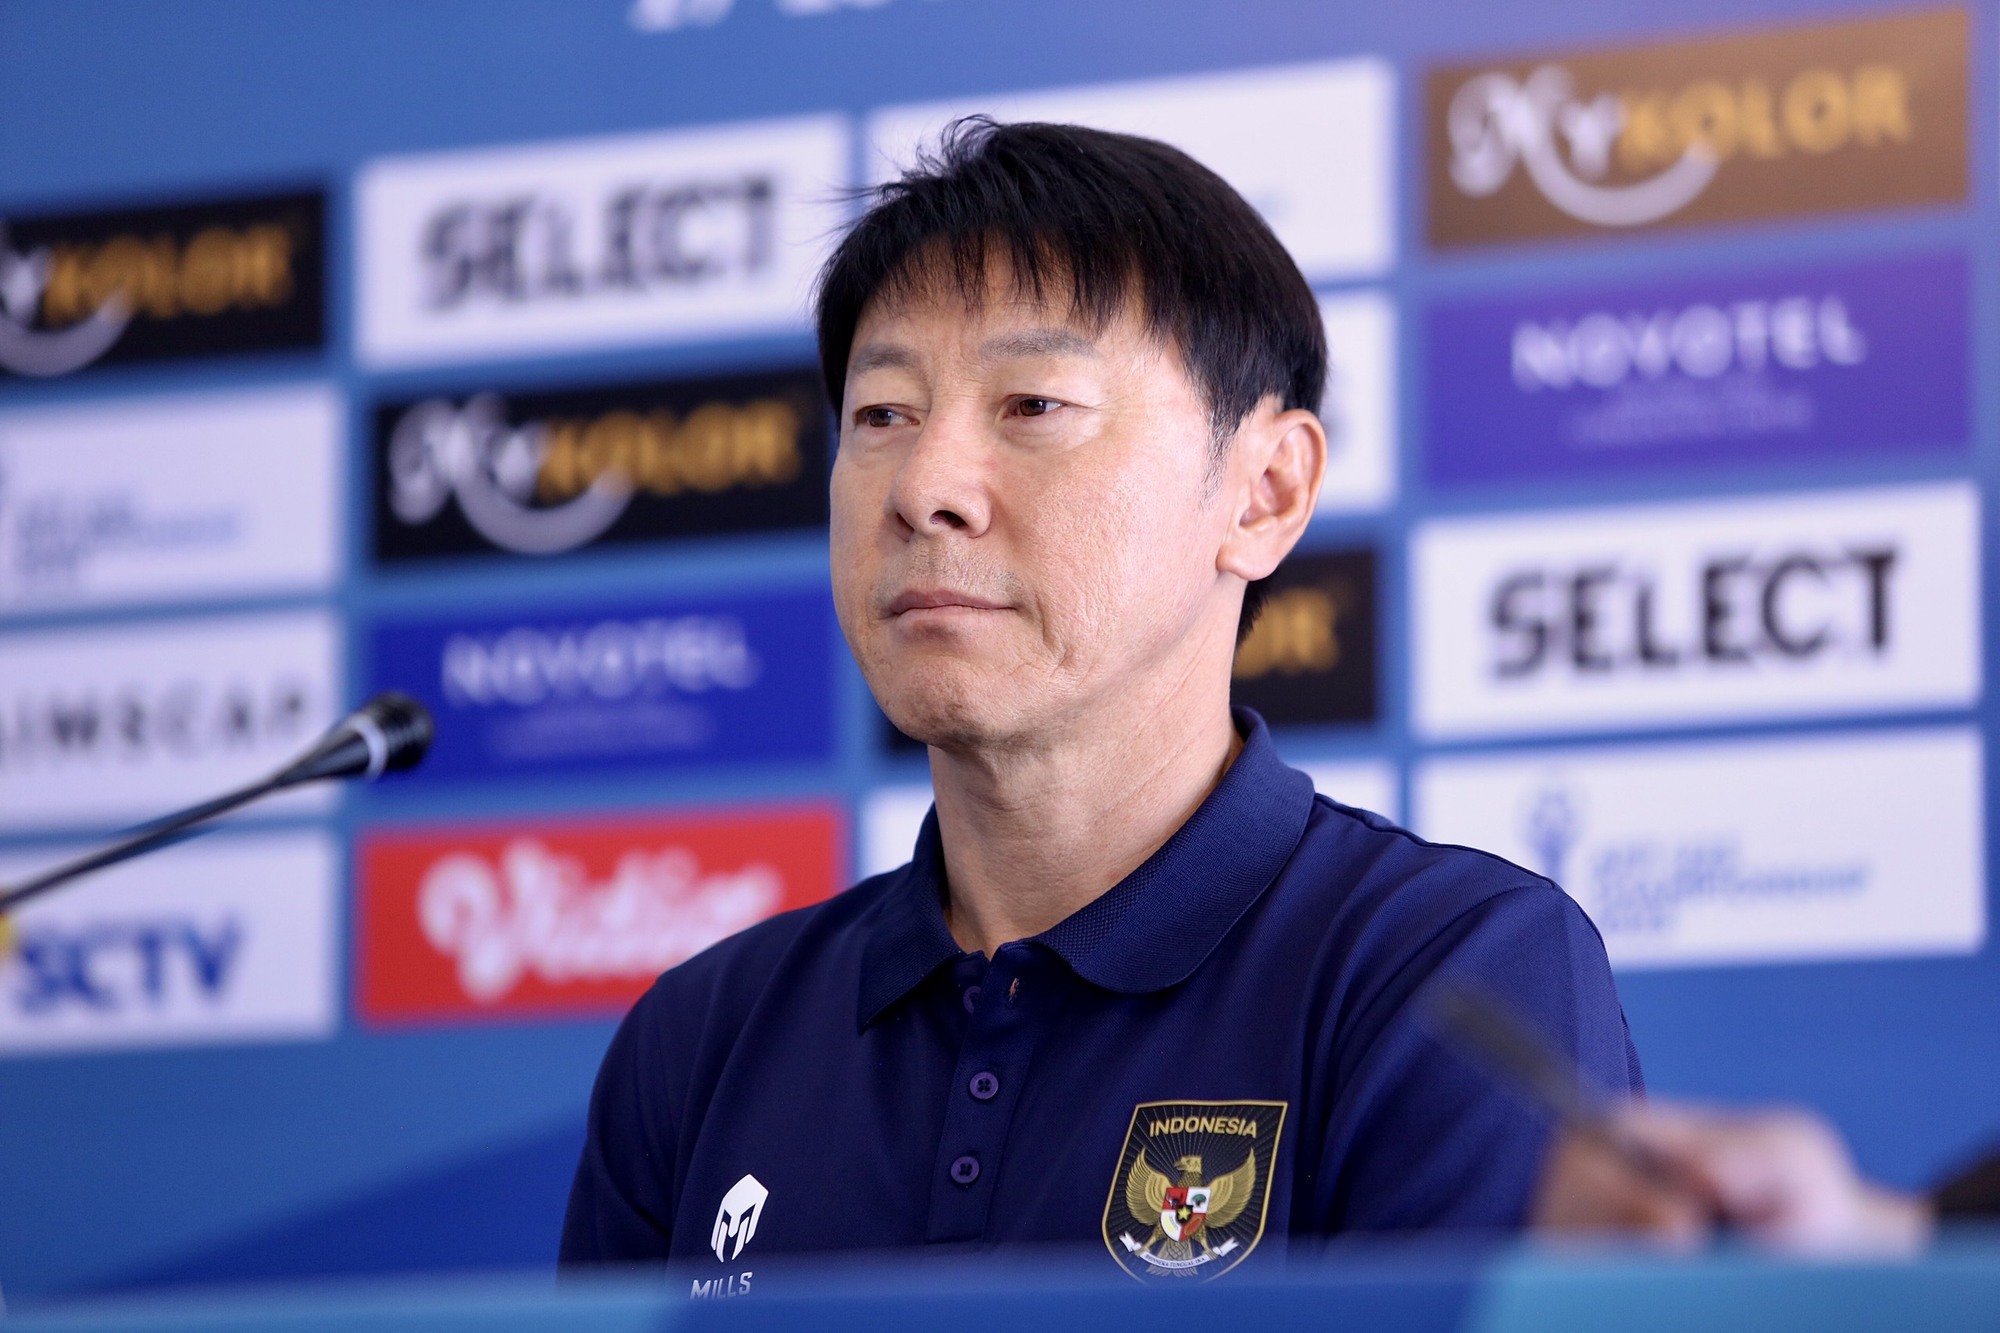 HLV Shin Tae-yong bị thay thế ở đội tuyển Indonesia - Ảnh 2.